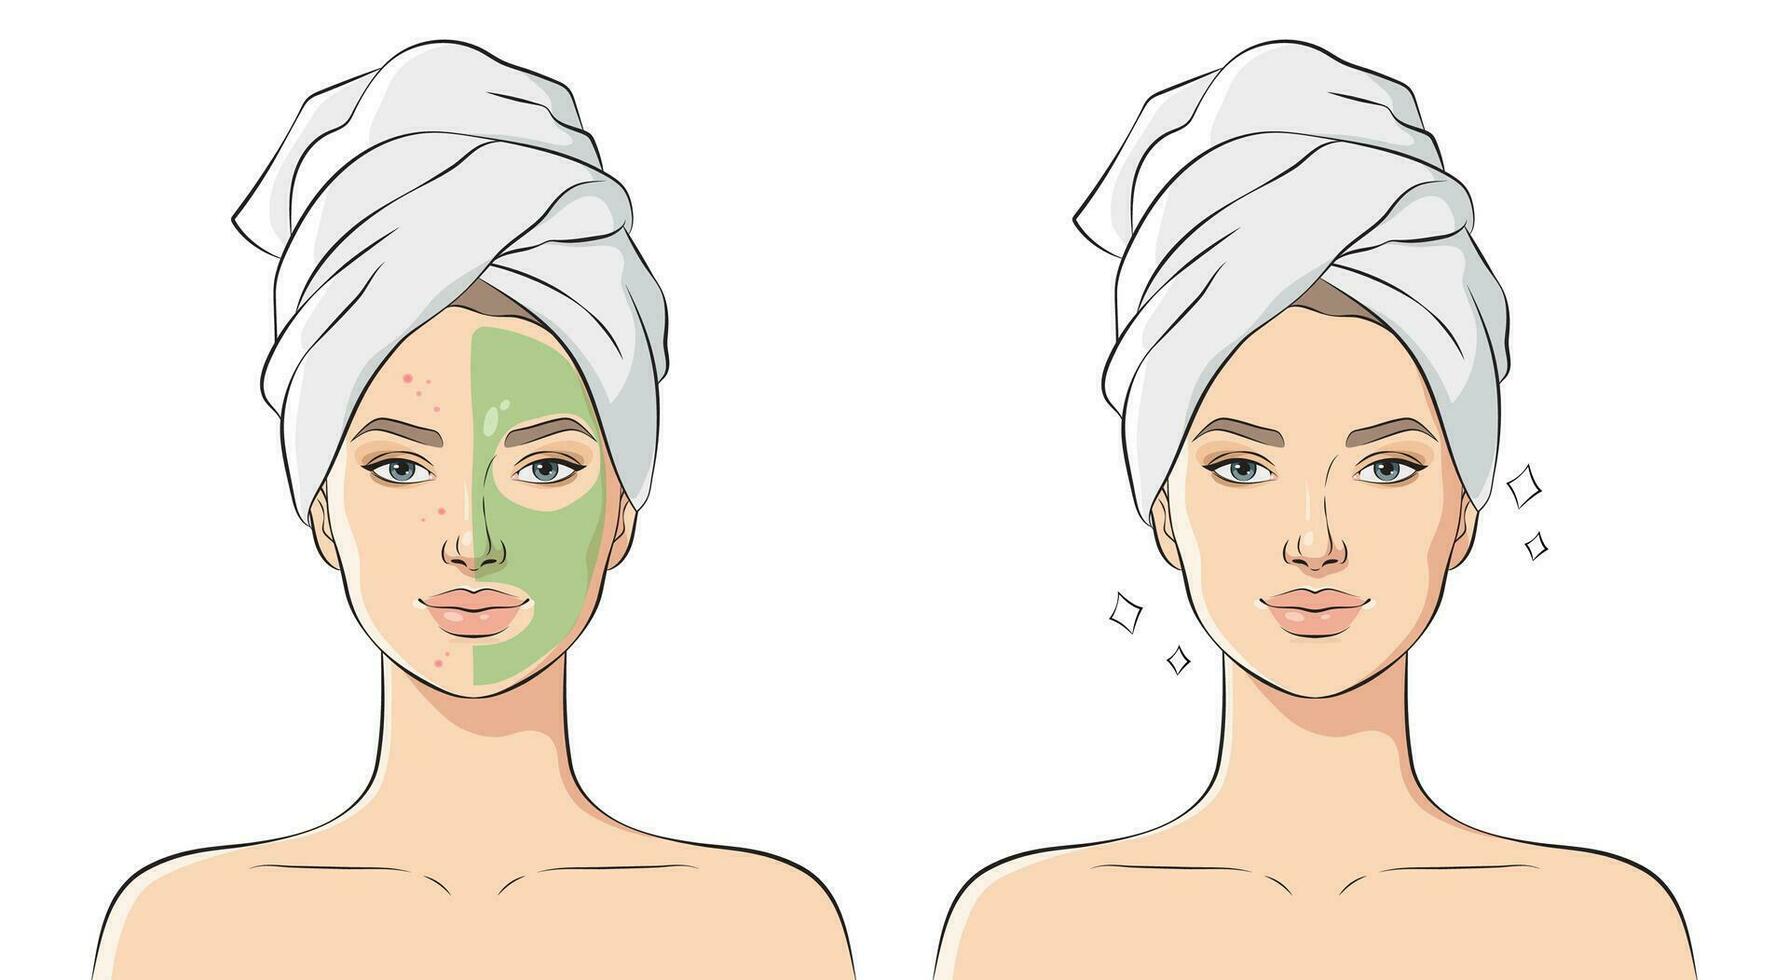 kvinna med problem hud användningar kosmetisk mask, vektor illustration